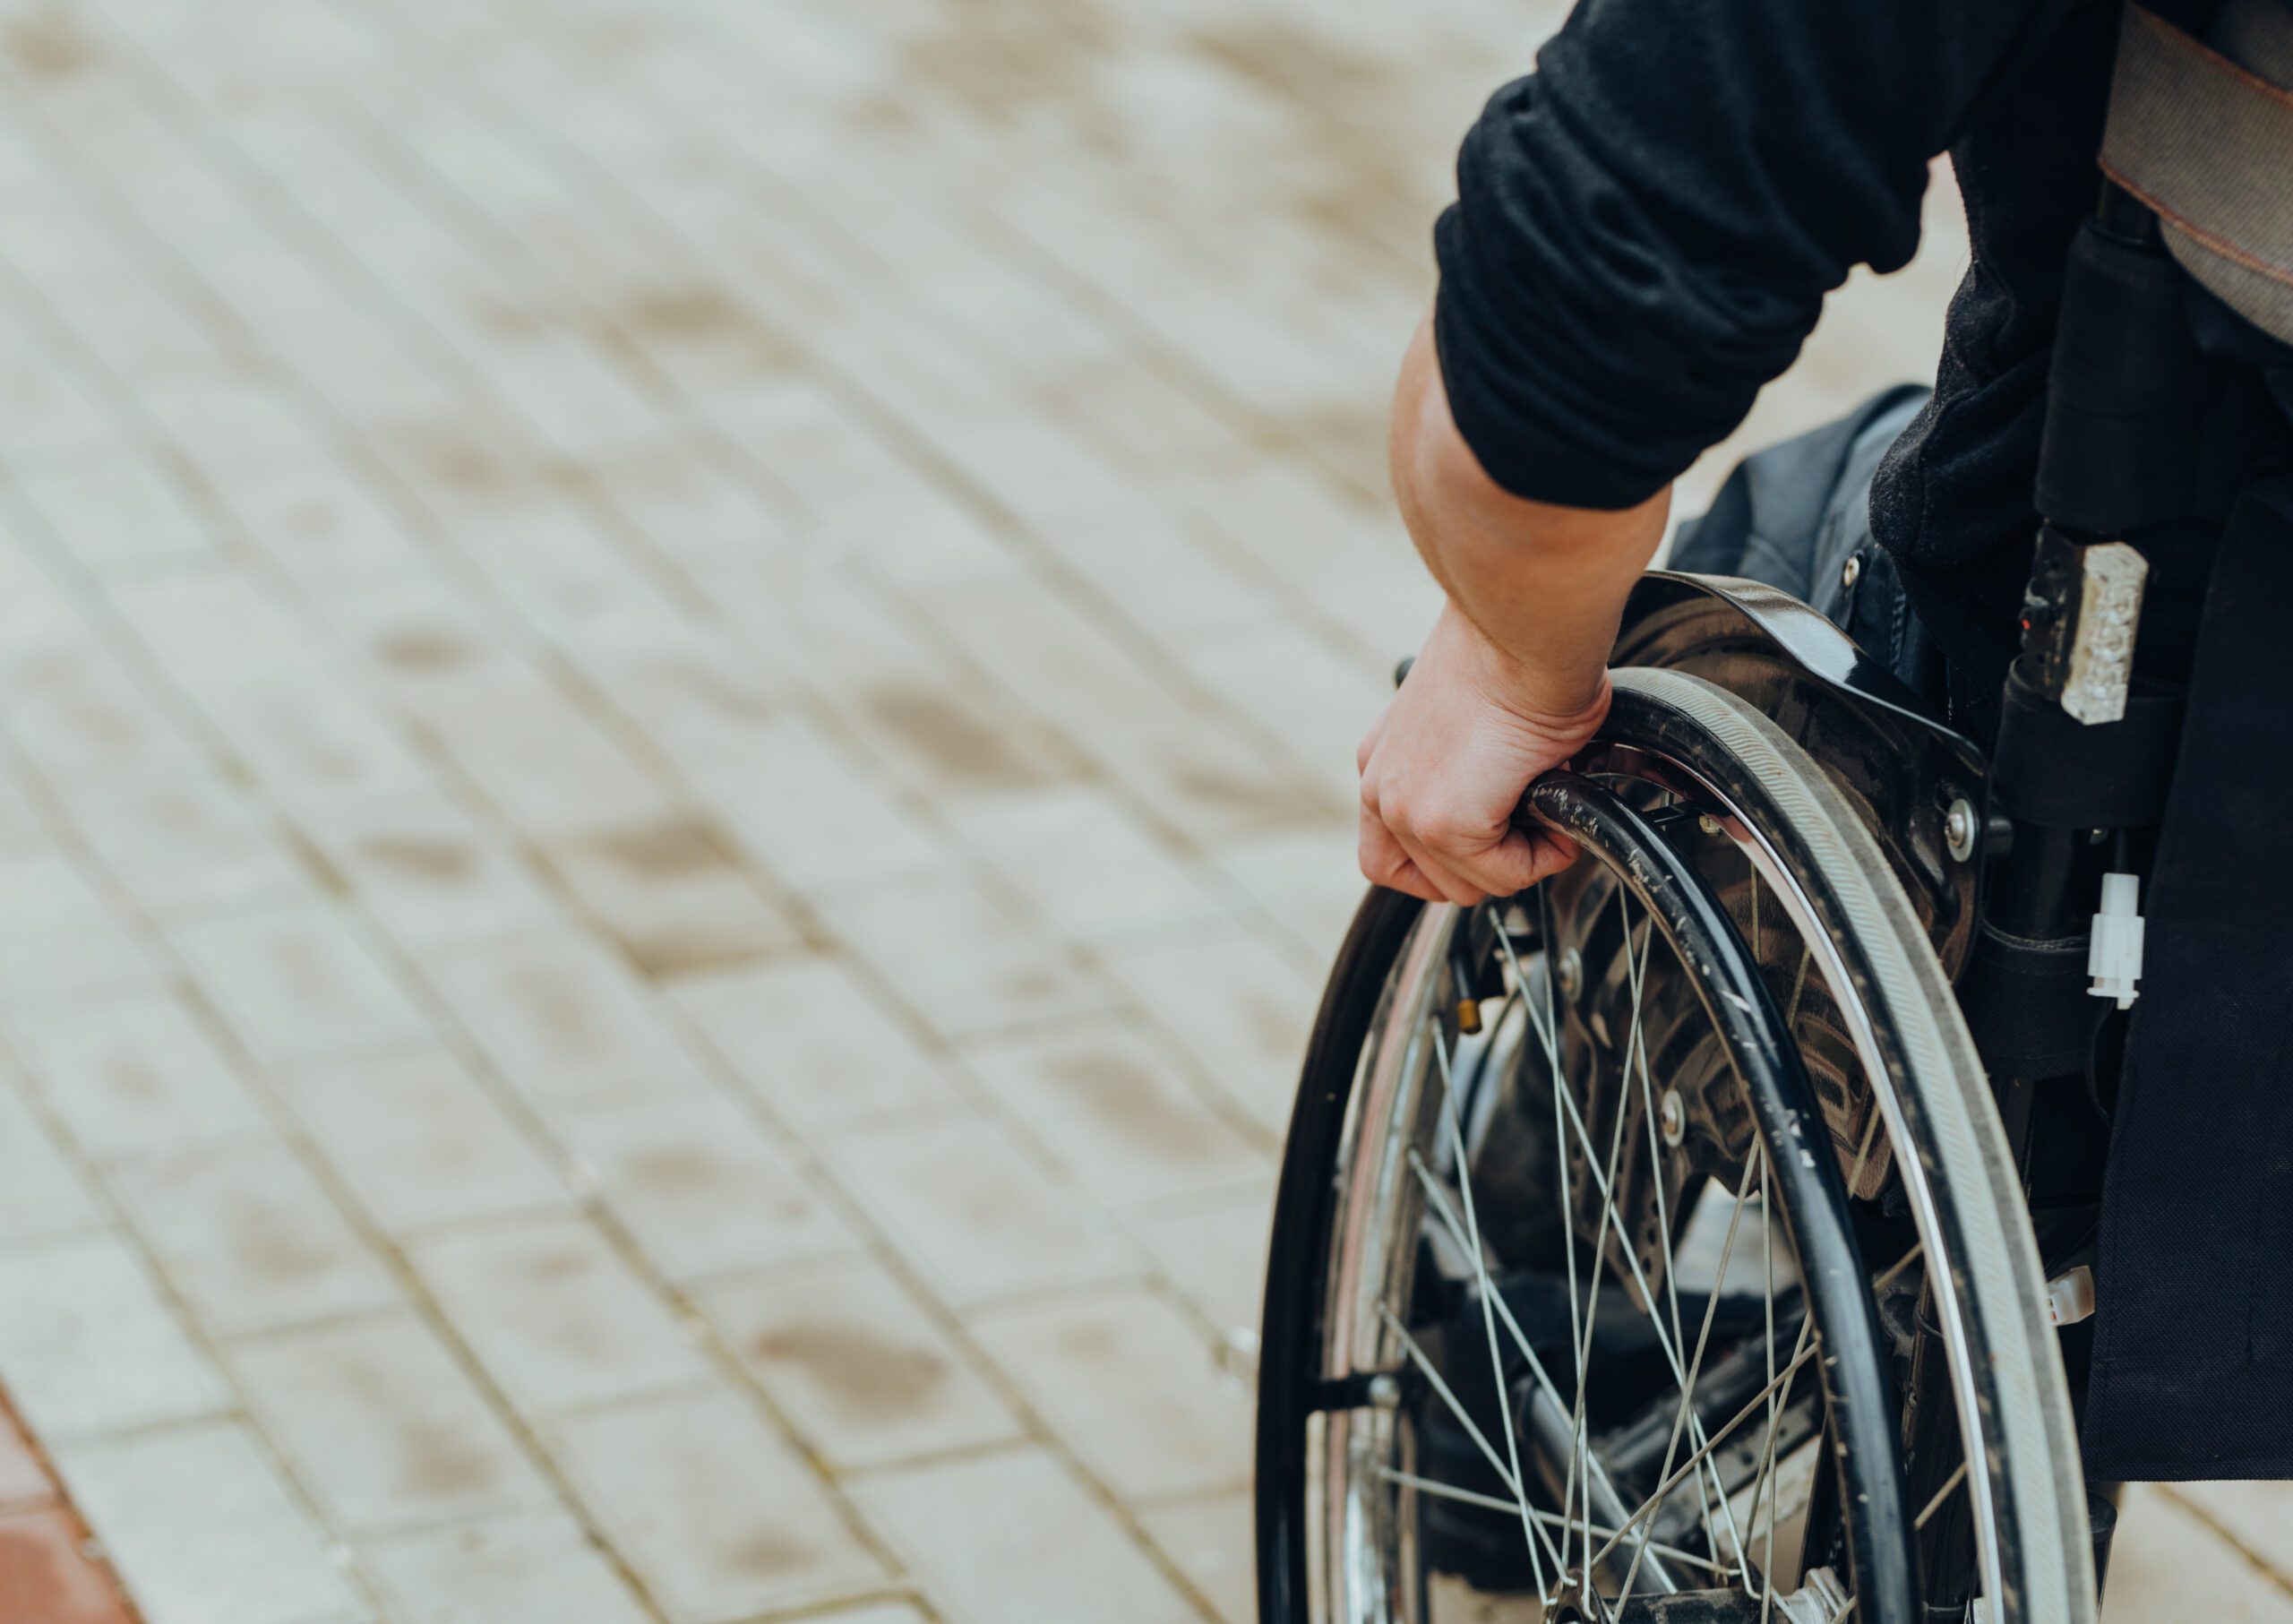 Un paraplégique retrouve le contrôle de la marche par la pensée